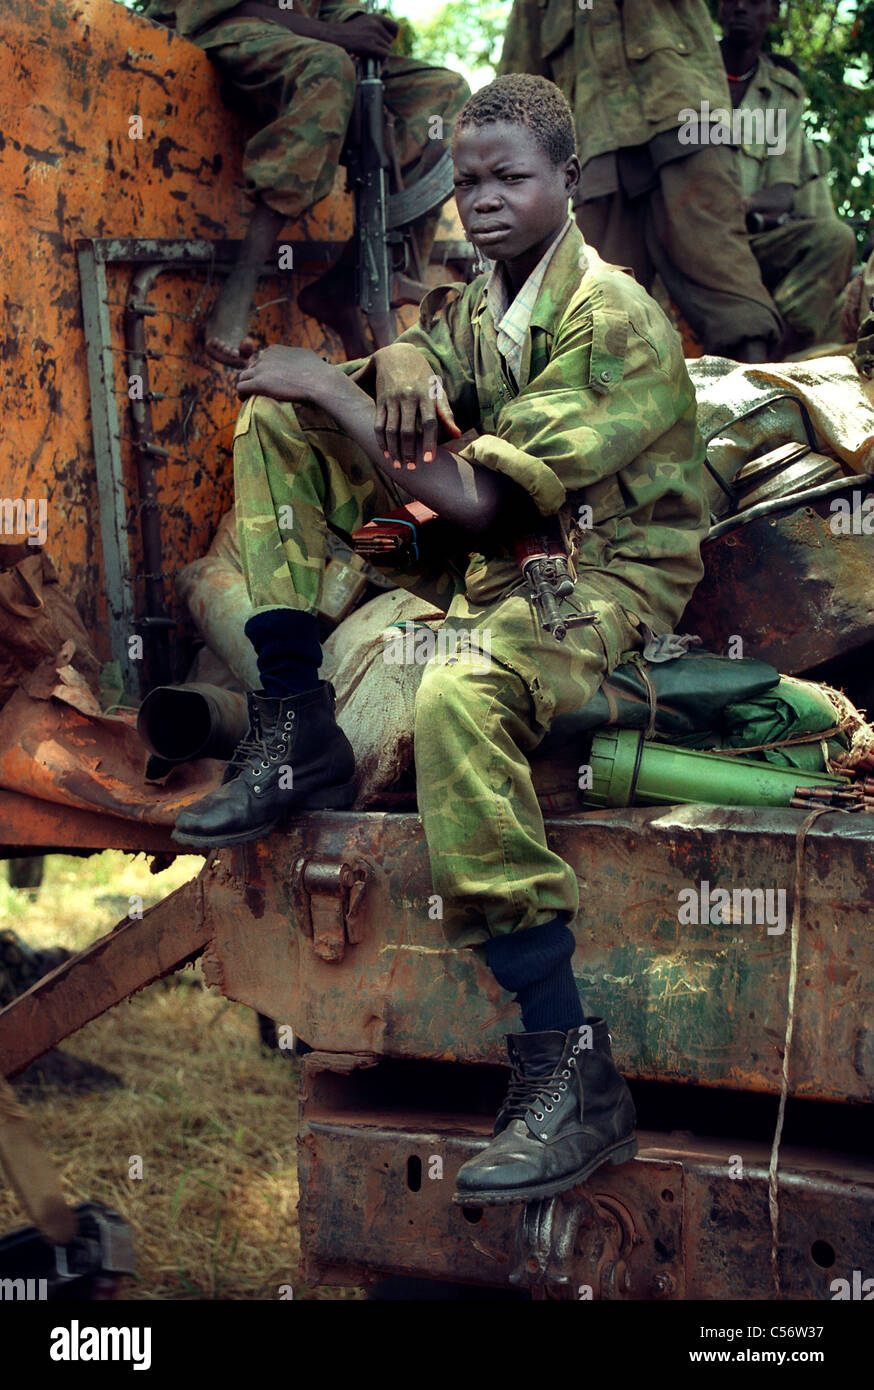 Der 12-jährige südsudanesische Kindersoldat, Mitglied der sudanesischen Volksbefreiungsarmee, war während des Kampfes gegen die nordsudanesische Armee im Südsudan, Afrika, an vorderster Front im Einsatz Stockfoto